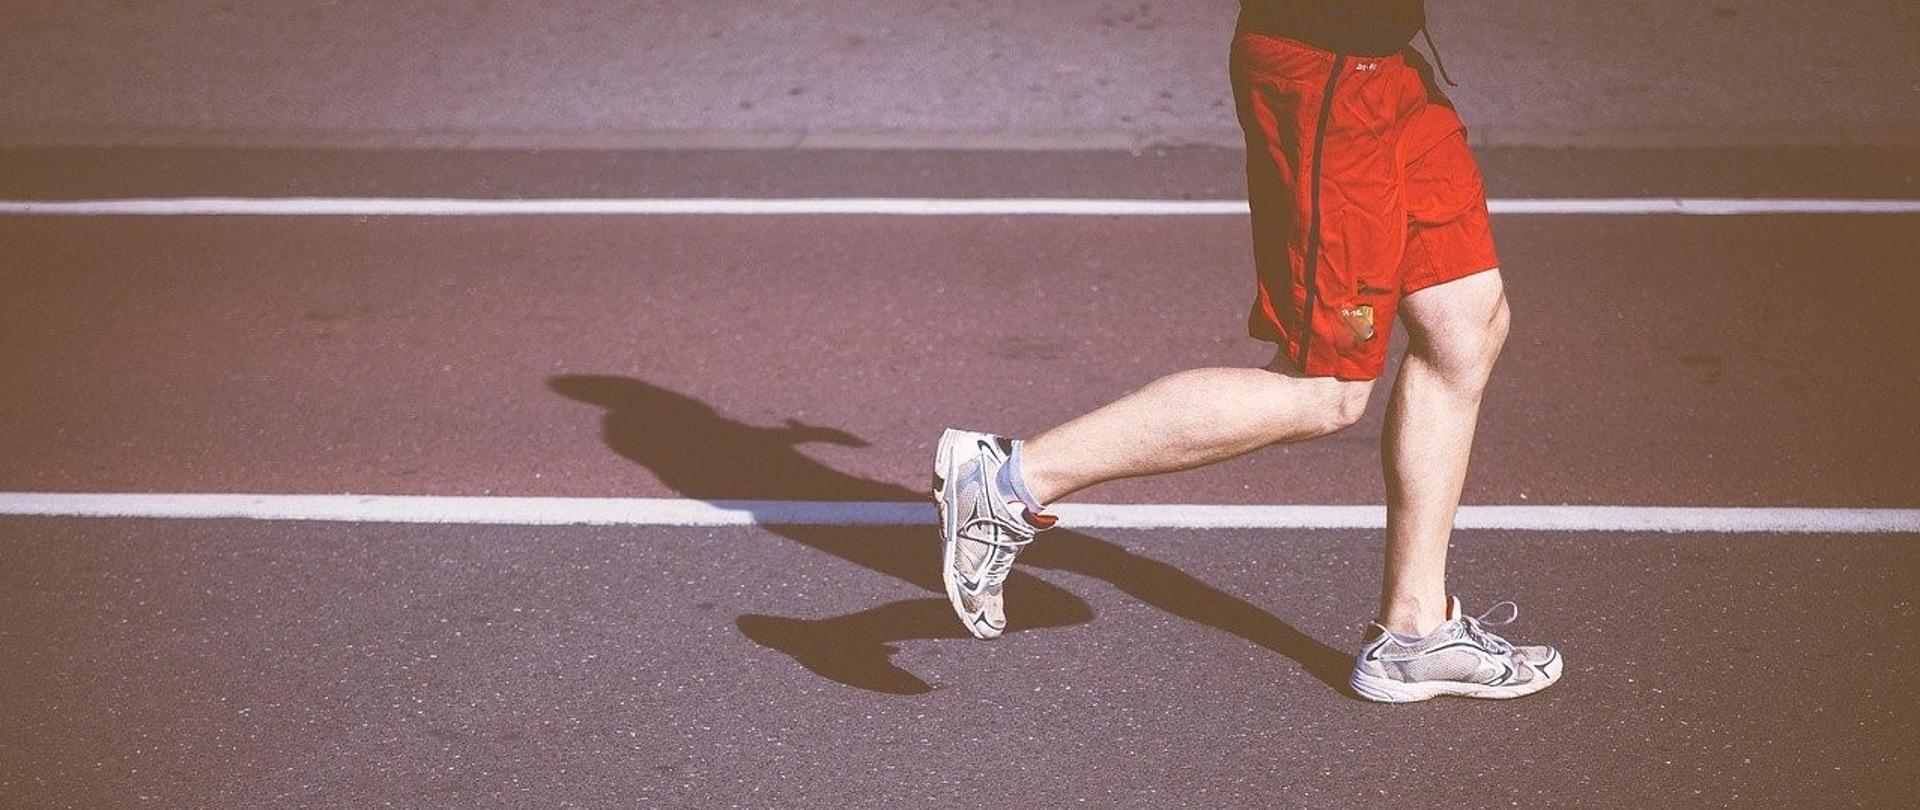 Grafika przedstawia sylwetkę człowieka od pasa w dół w trakcie biegu na bieżni, ubranego w czerwone krótkie spodenki i szare buty sportowe.